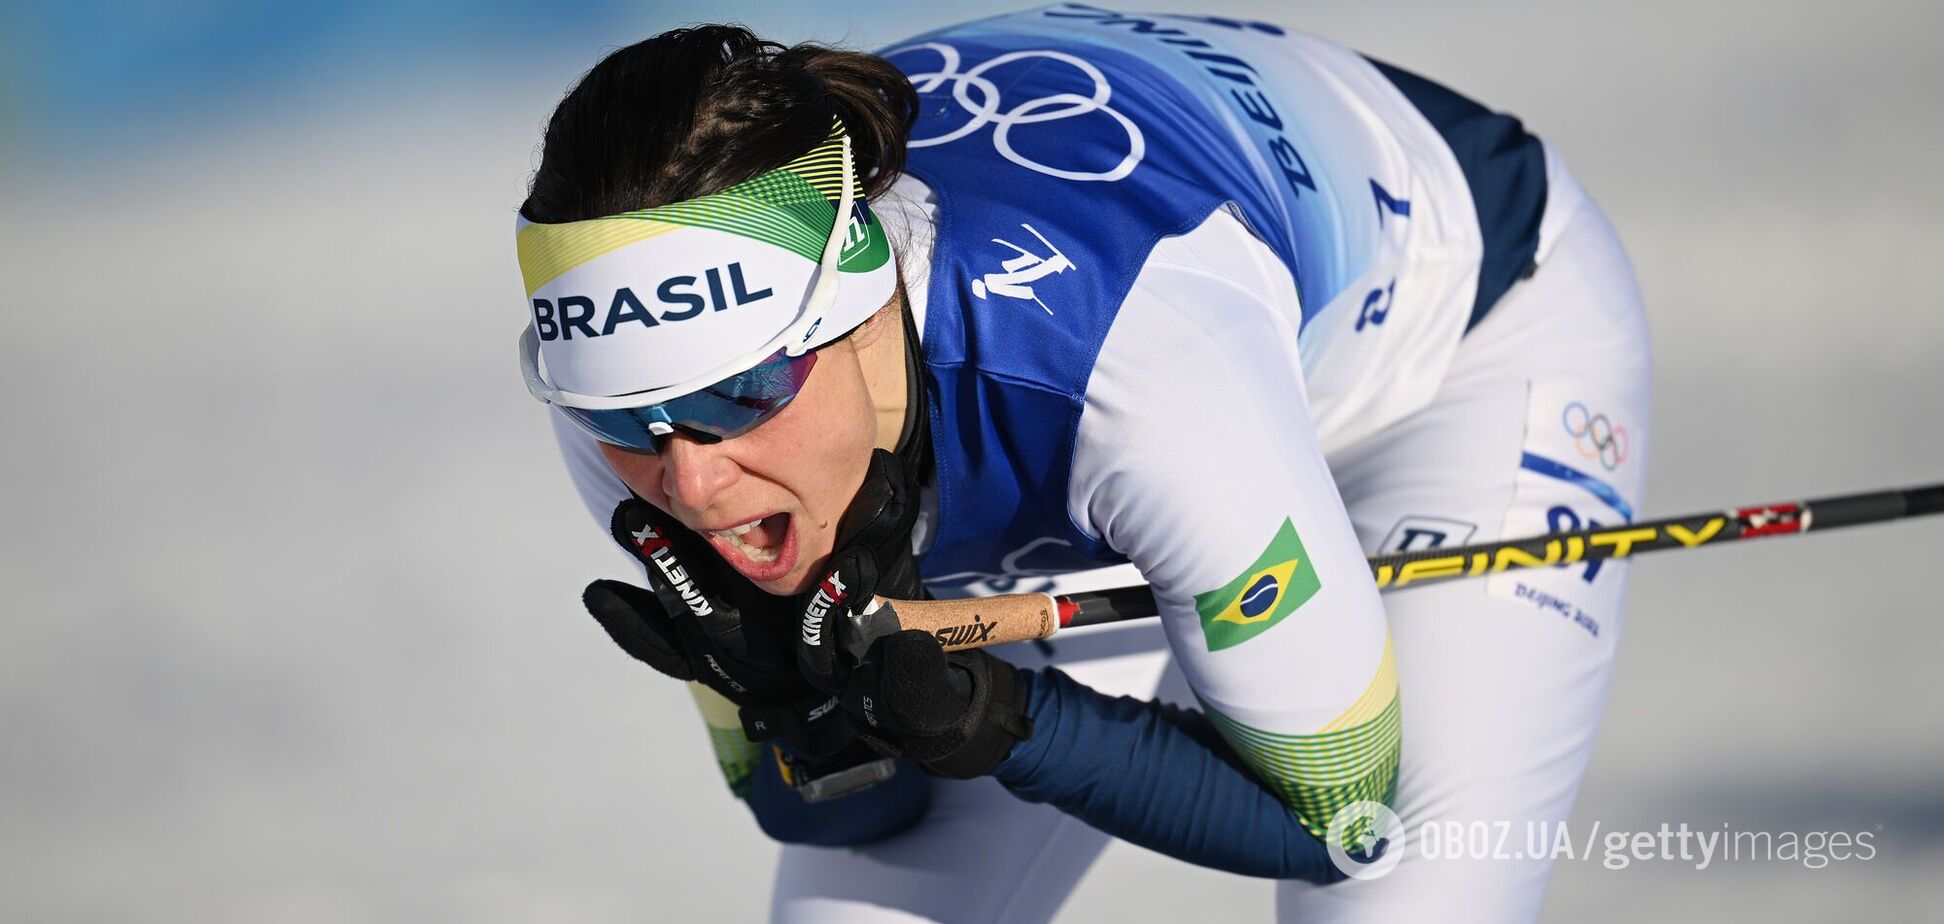 Лижниця з Бразилії встановила унікальний рекорд на Олімпіді-2022